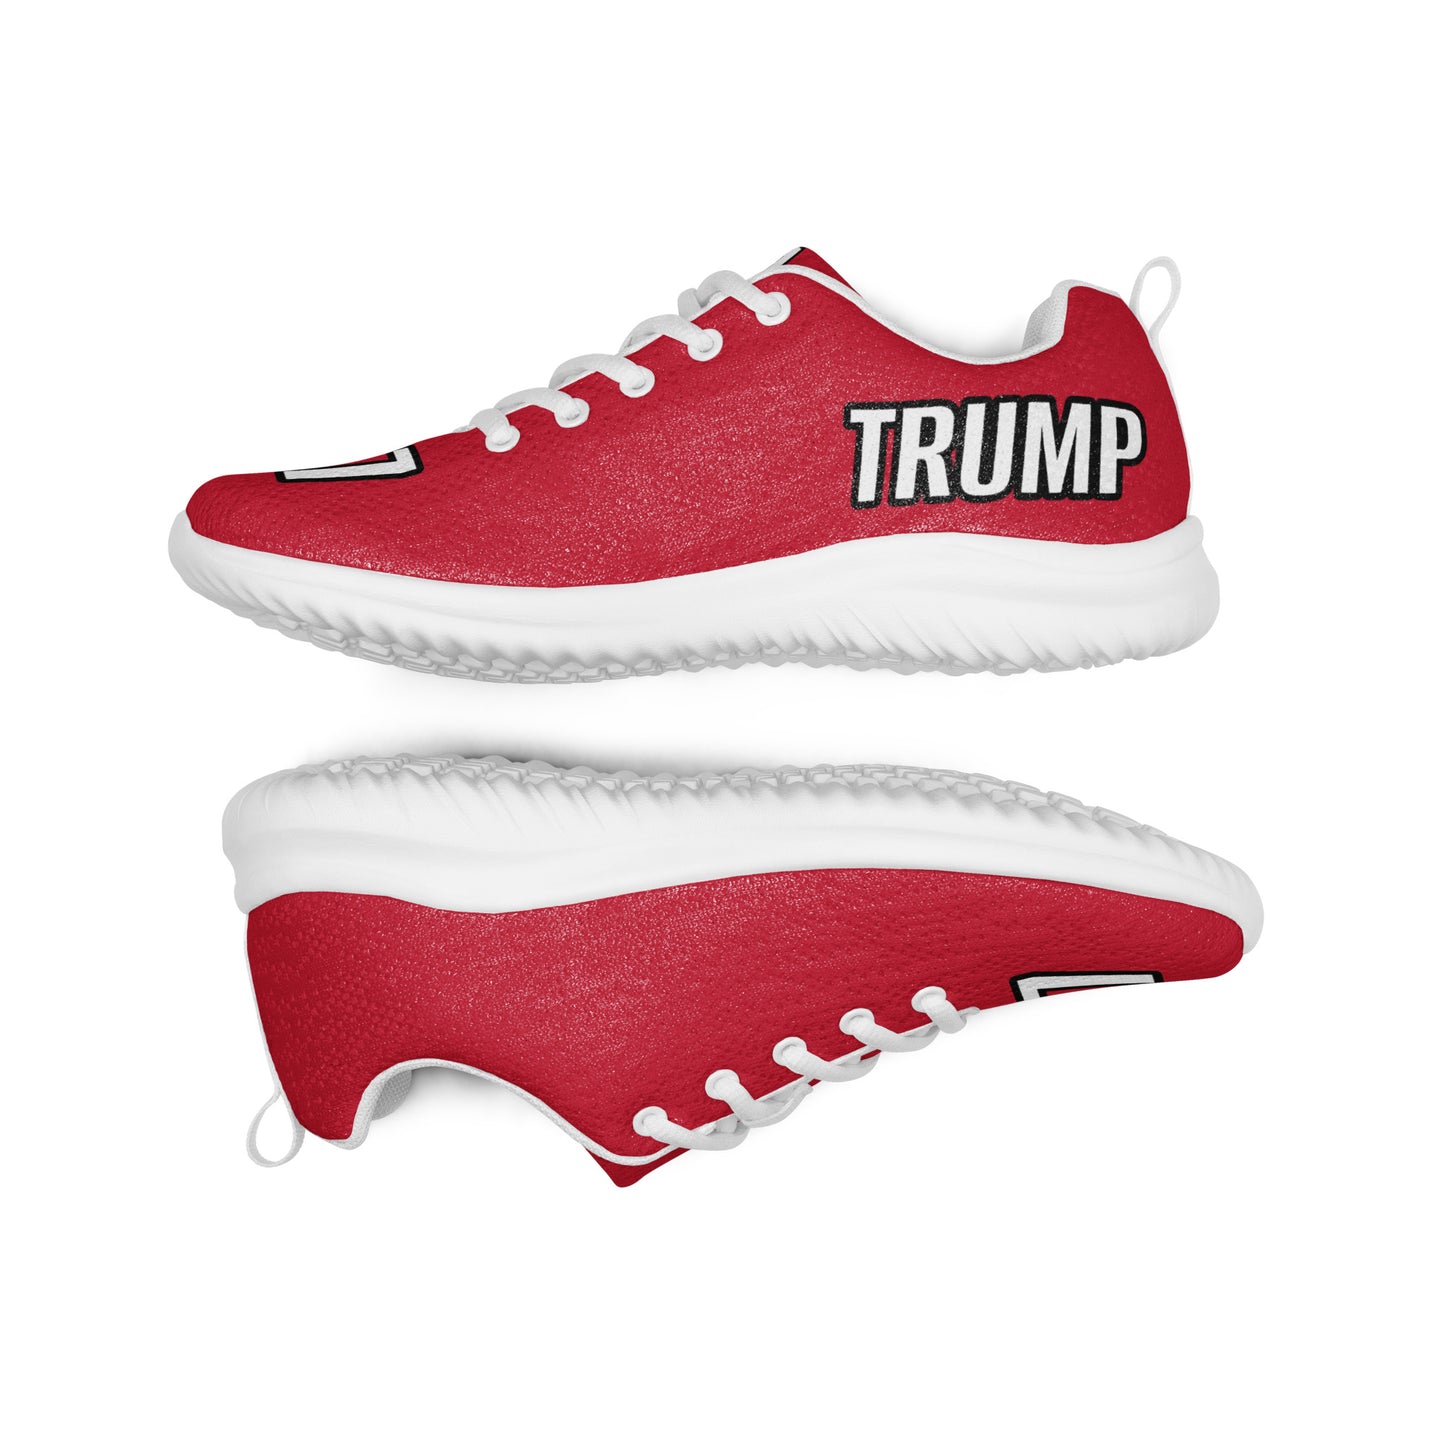 MAGAGA Store original Trump 47 Men’s athletic sneaker shoes